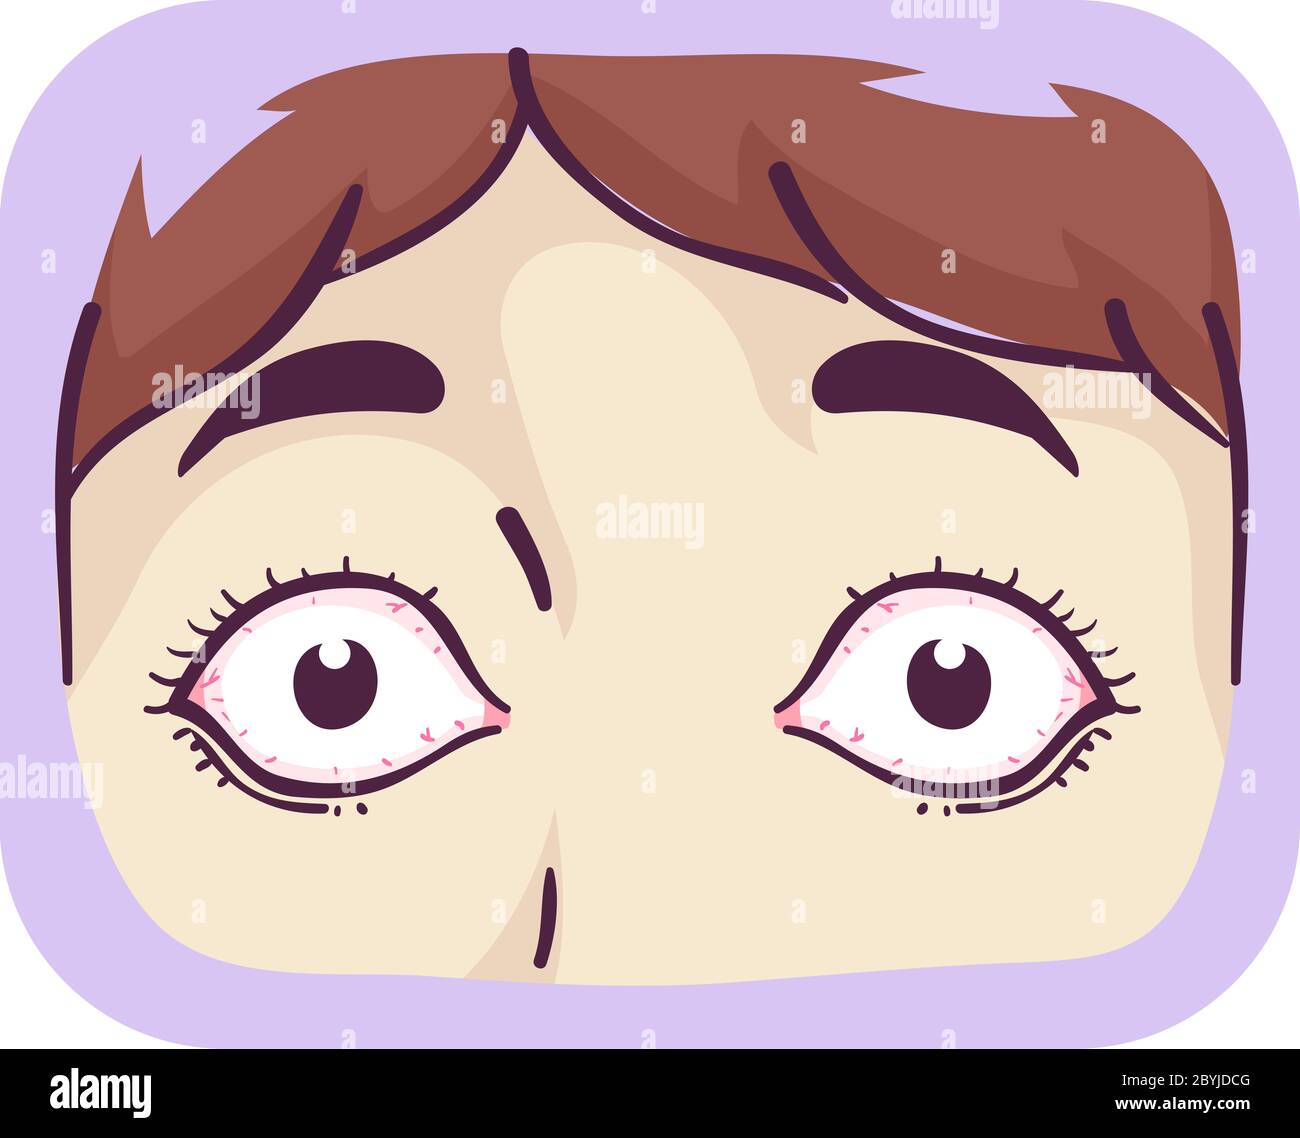 Illustration des yeux enfants d'une fille, symptôme de la maladie de Basedow Banque D'Images